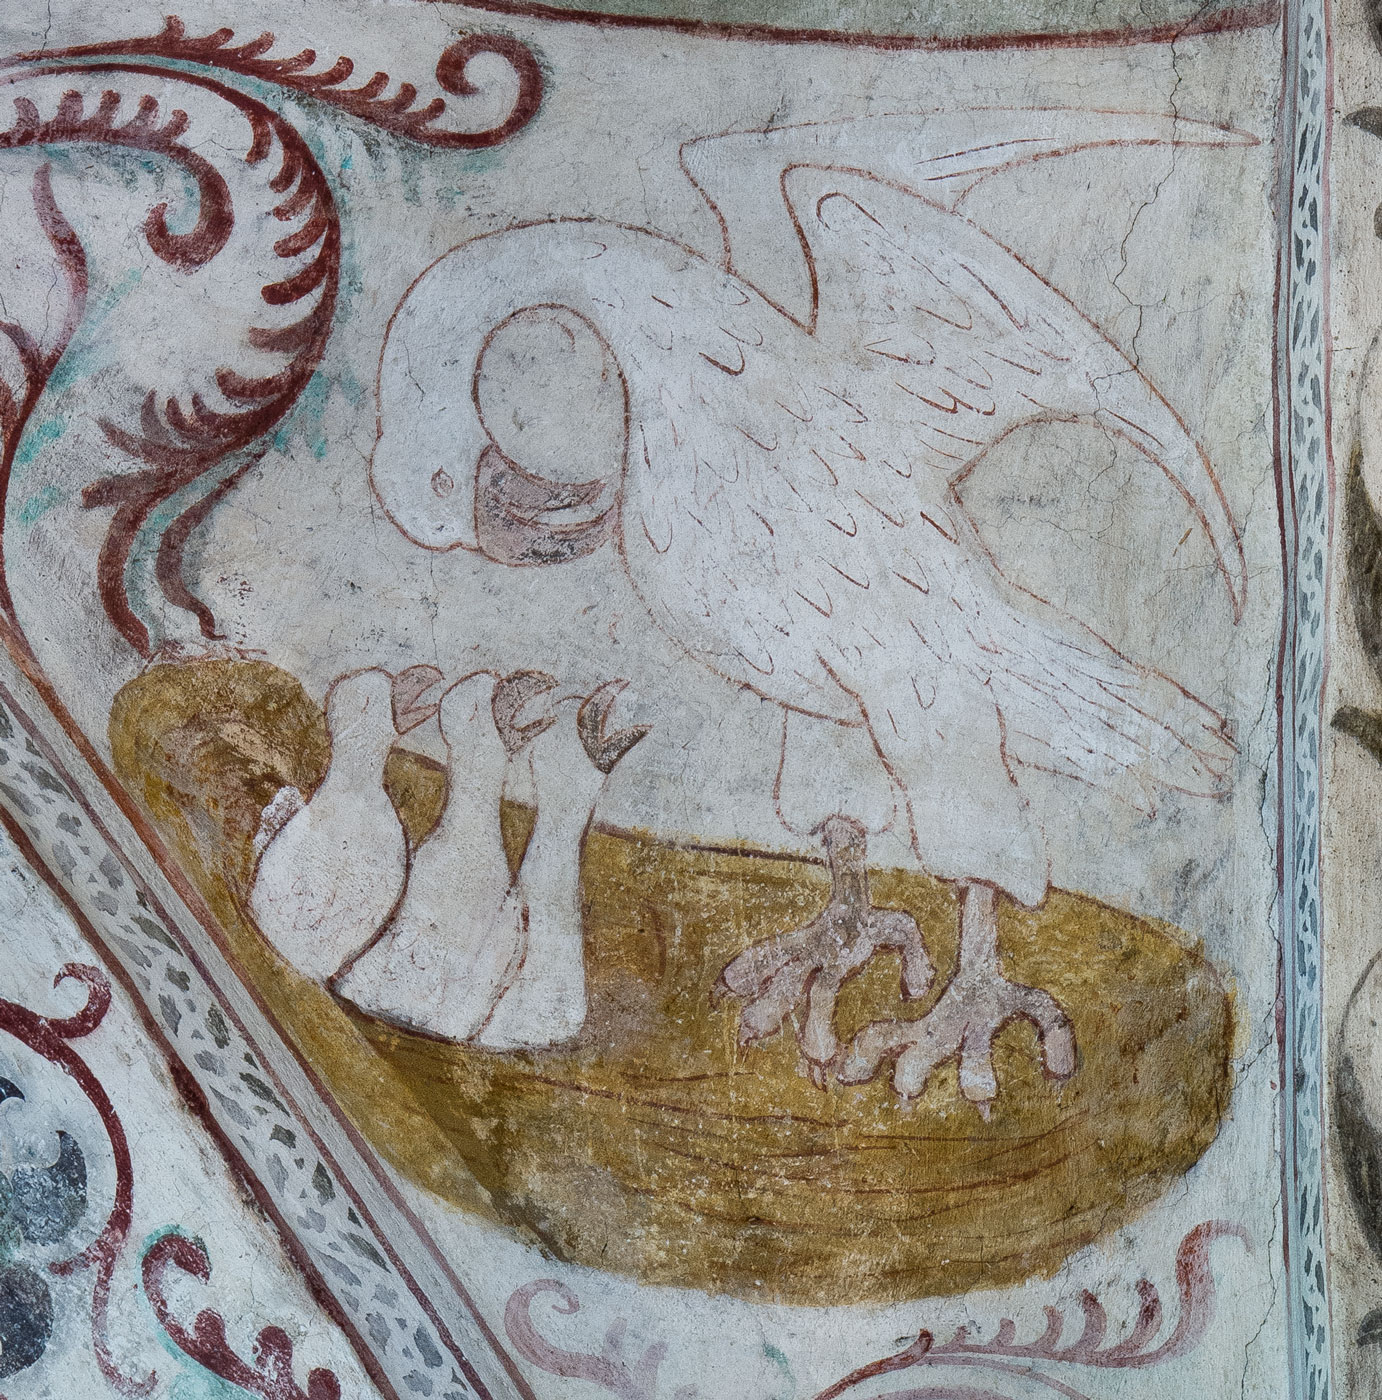 Pelikanen, som matar sina ungar med sitt eget blod - Vänge kyrka